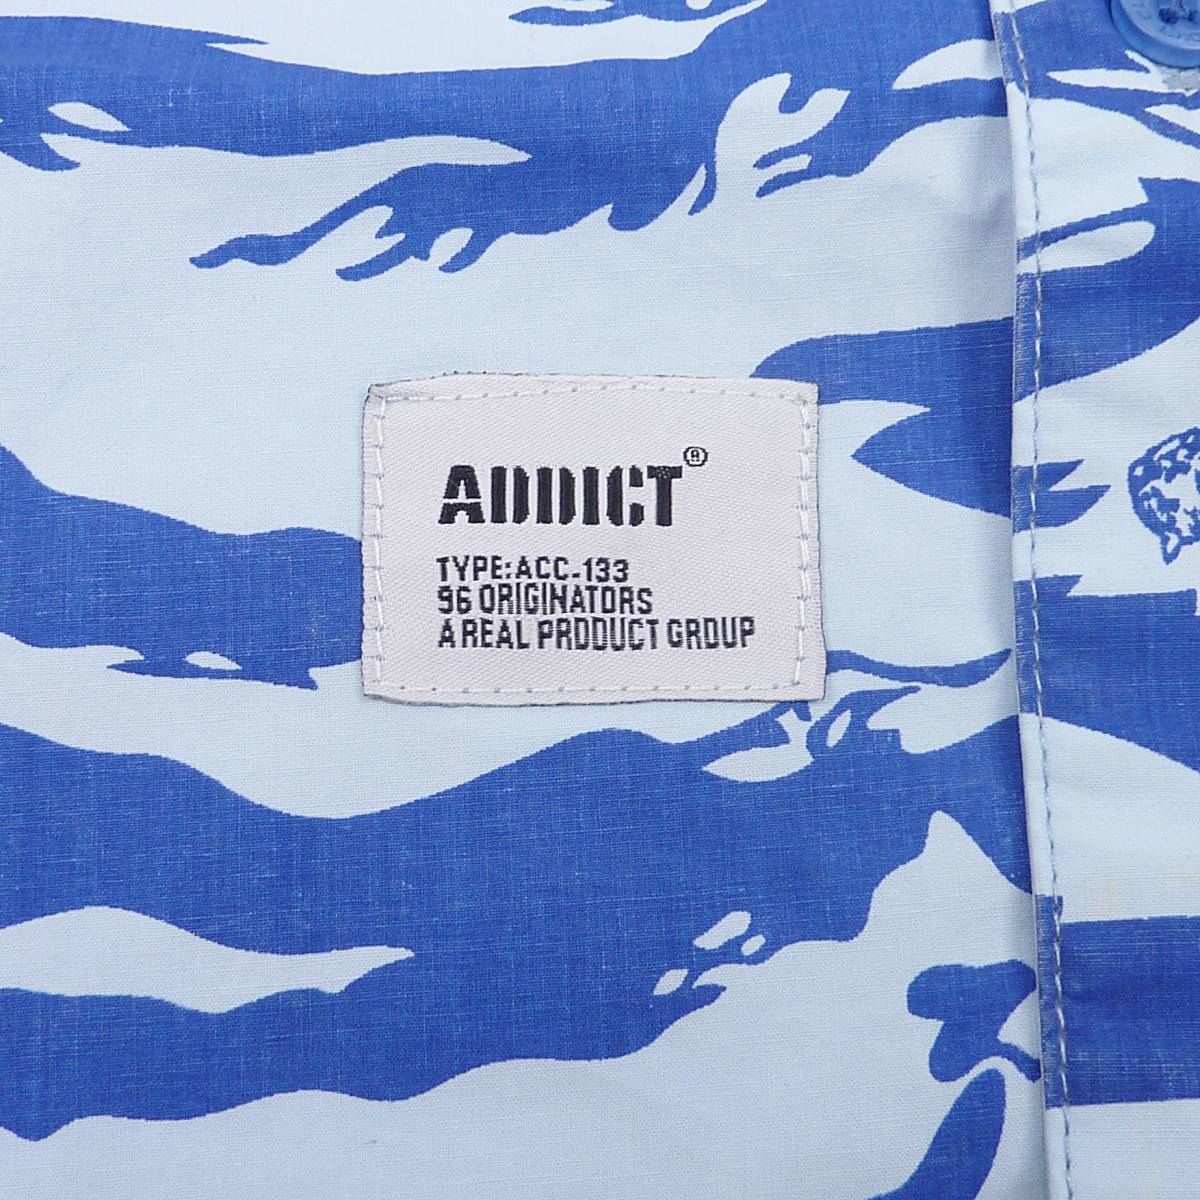 Addict アディクト TONAL TIGER S/S LV CPO SHIRT 半袖 ボタンシャツ (ブルー) (M) [並行輸入品]